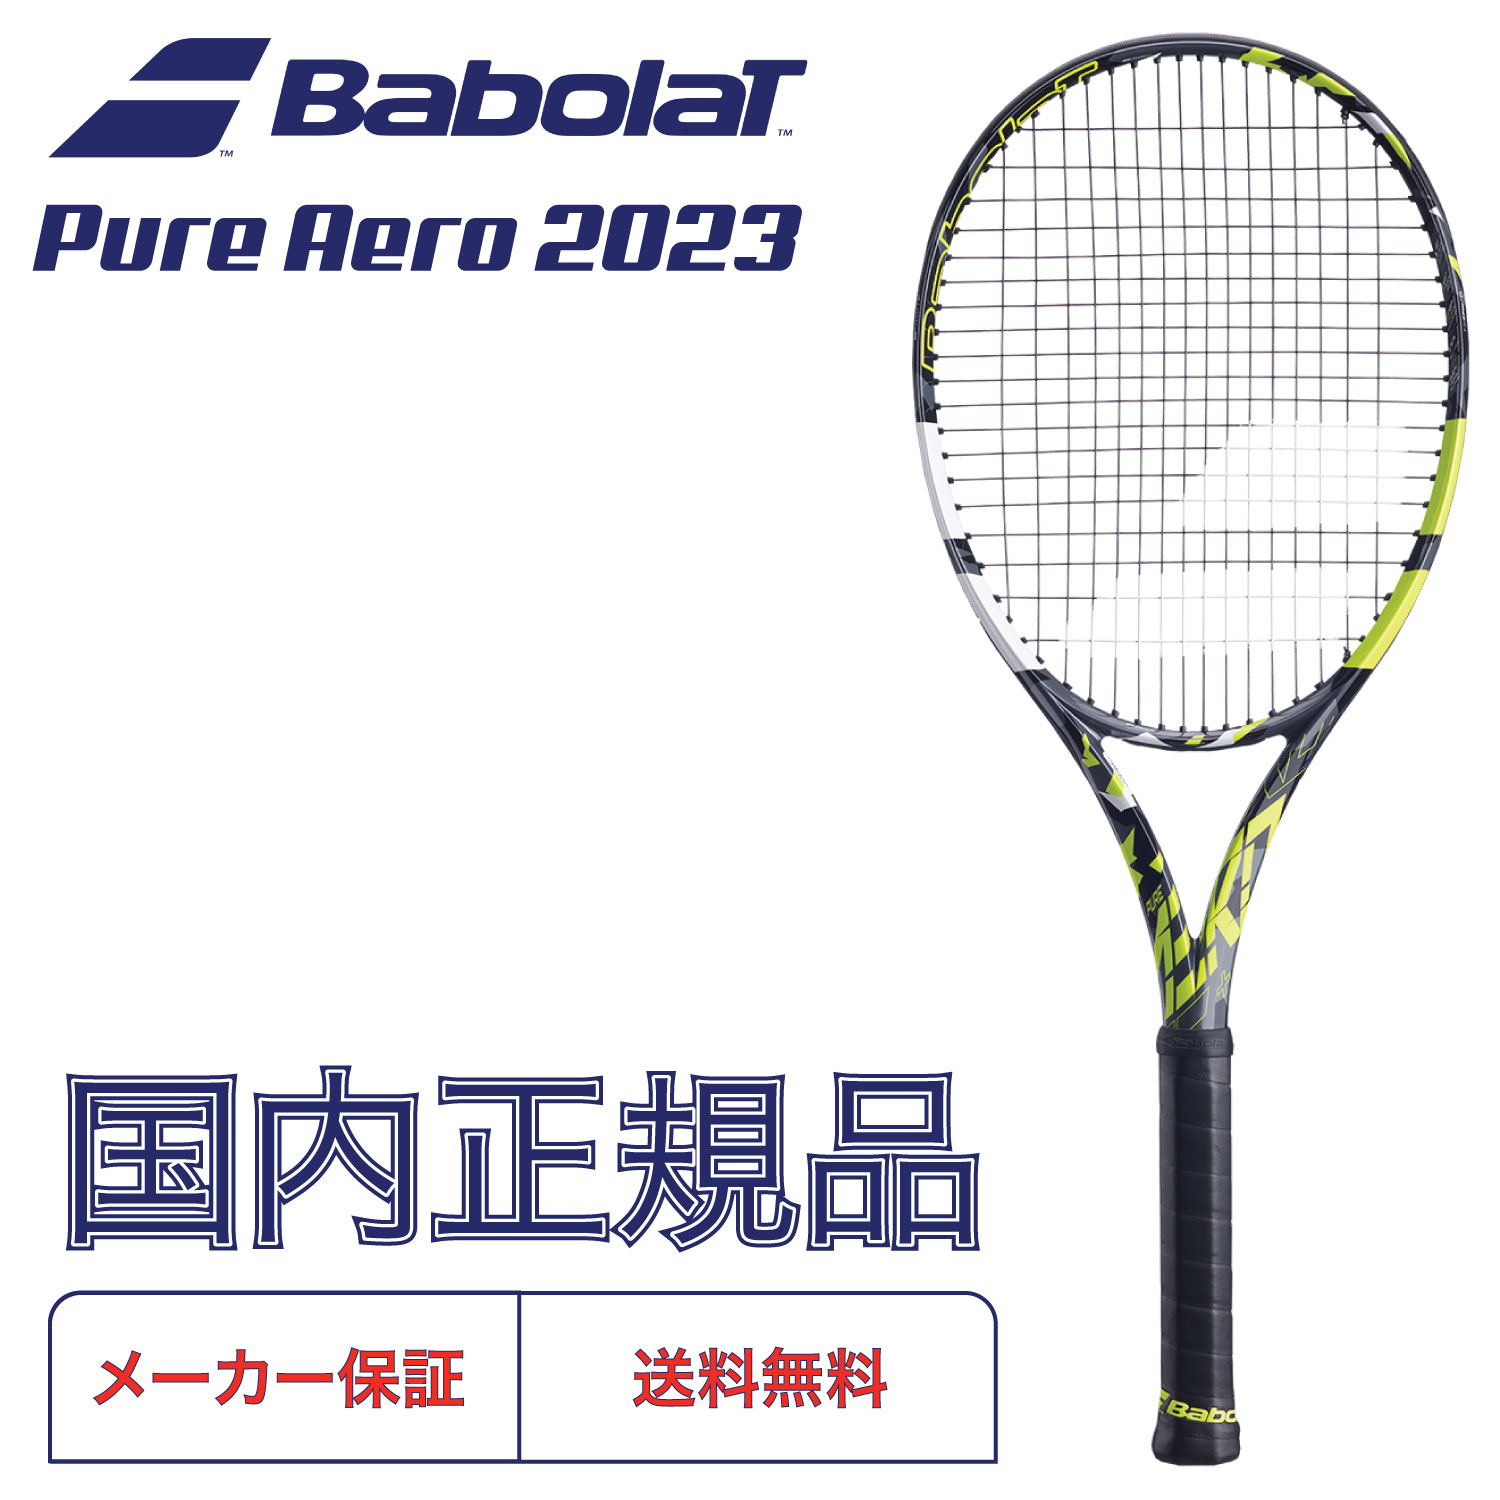 テクニファイバー 硬式テニス用 ガット BOB RAZOR CODE 200mロール 1.30mm TFSR403 WH Tecnifibre